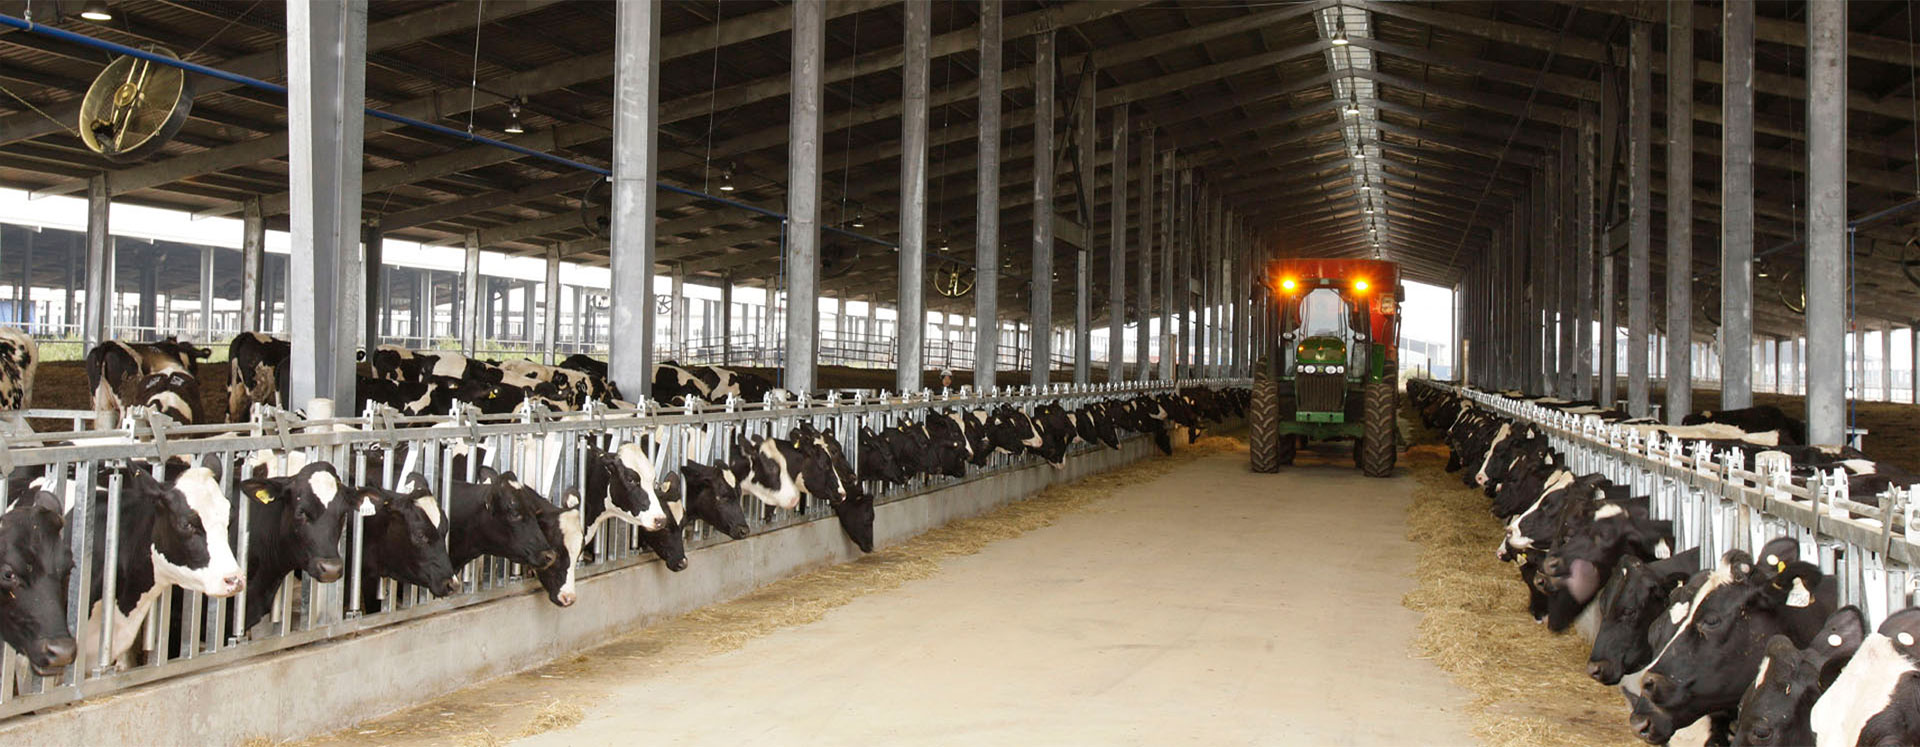 Chăn nuôi bò sữa là một công việc đầy thách thức và cũng mang đến nhiều lợi ích kinh tế. Hãy cùng xem ảnh về các trang trại chăn nuôi bò sữa để hiểu thêm về quy trình nuôi, chăm sóc và thu hoạch sữa tươi ngon.